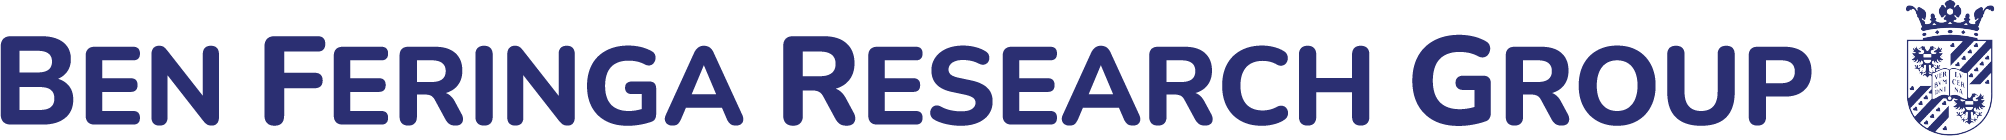 Logo Ben Feringa Research Group